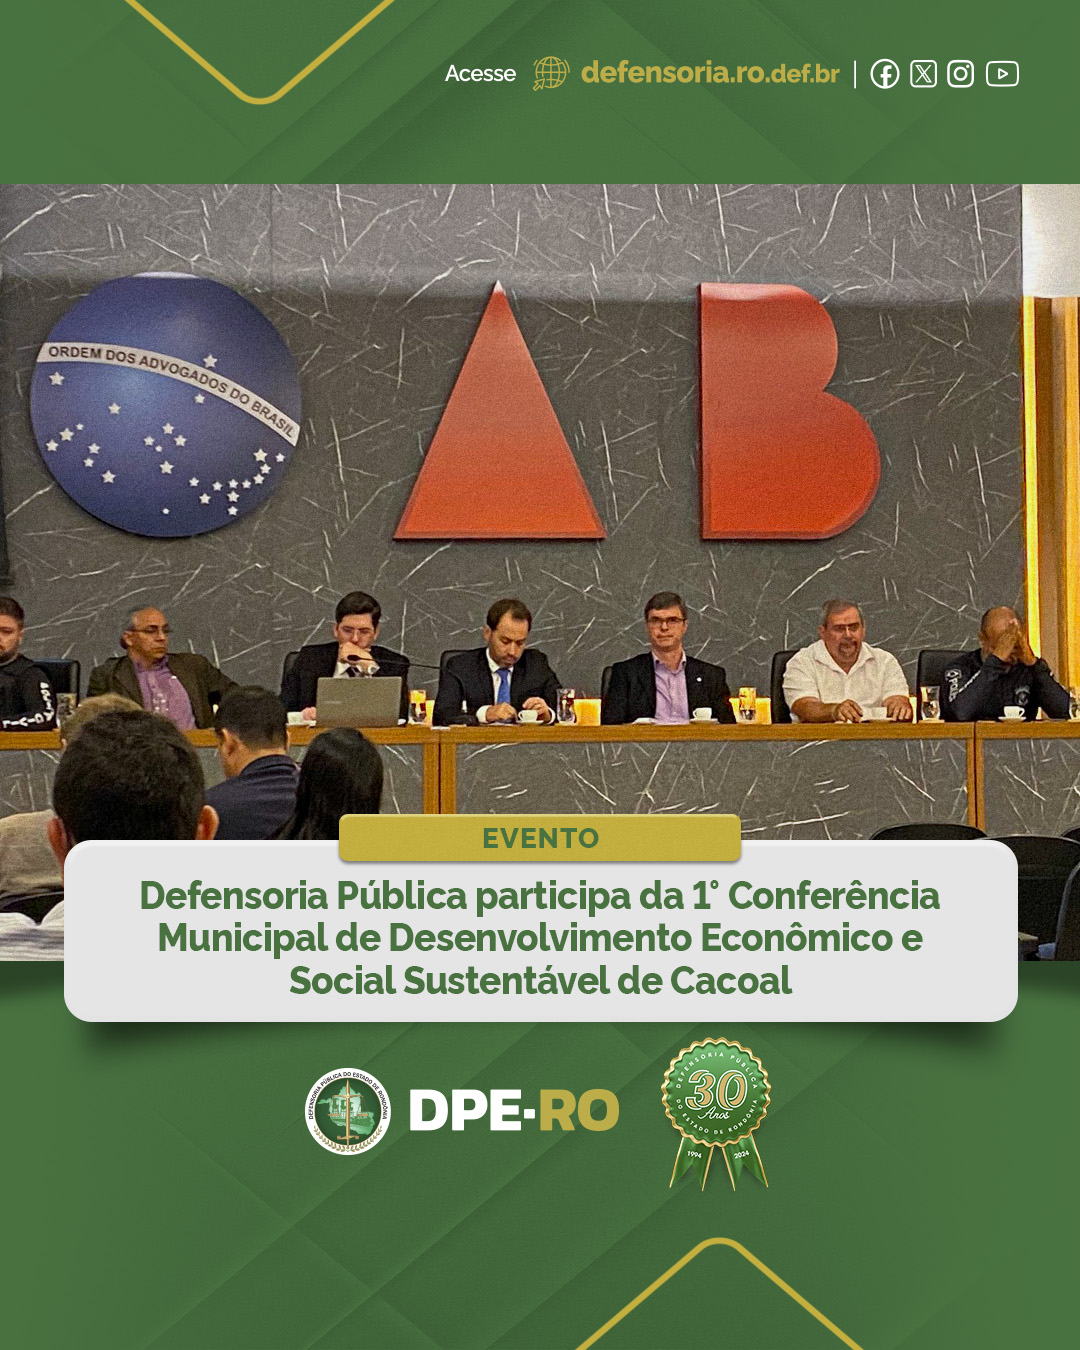 Defensoria Pública participa da 1° Conferência Municipal de Desenvolvimento Econômico e Social Sustentável de Cacoal